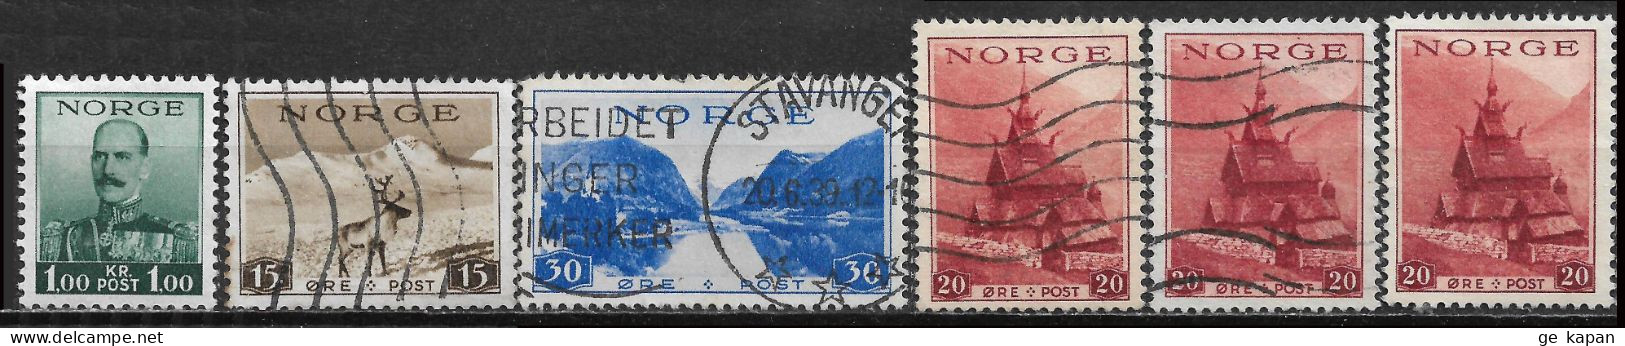 1937-1939 NORWAY SET OF 6 USED STAMPS (Michel # 191,195,197,201x) CV €4.70 - Gebruikt